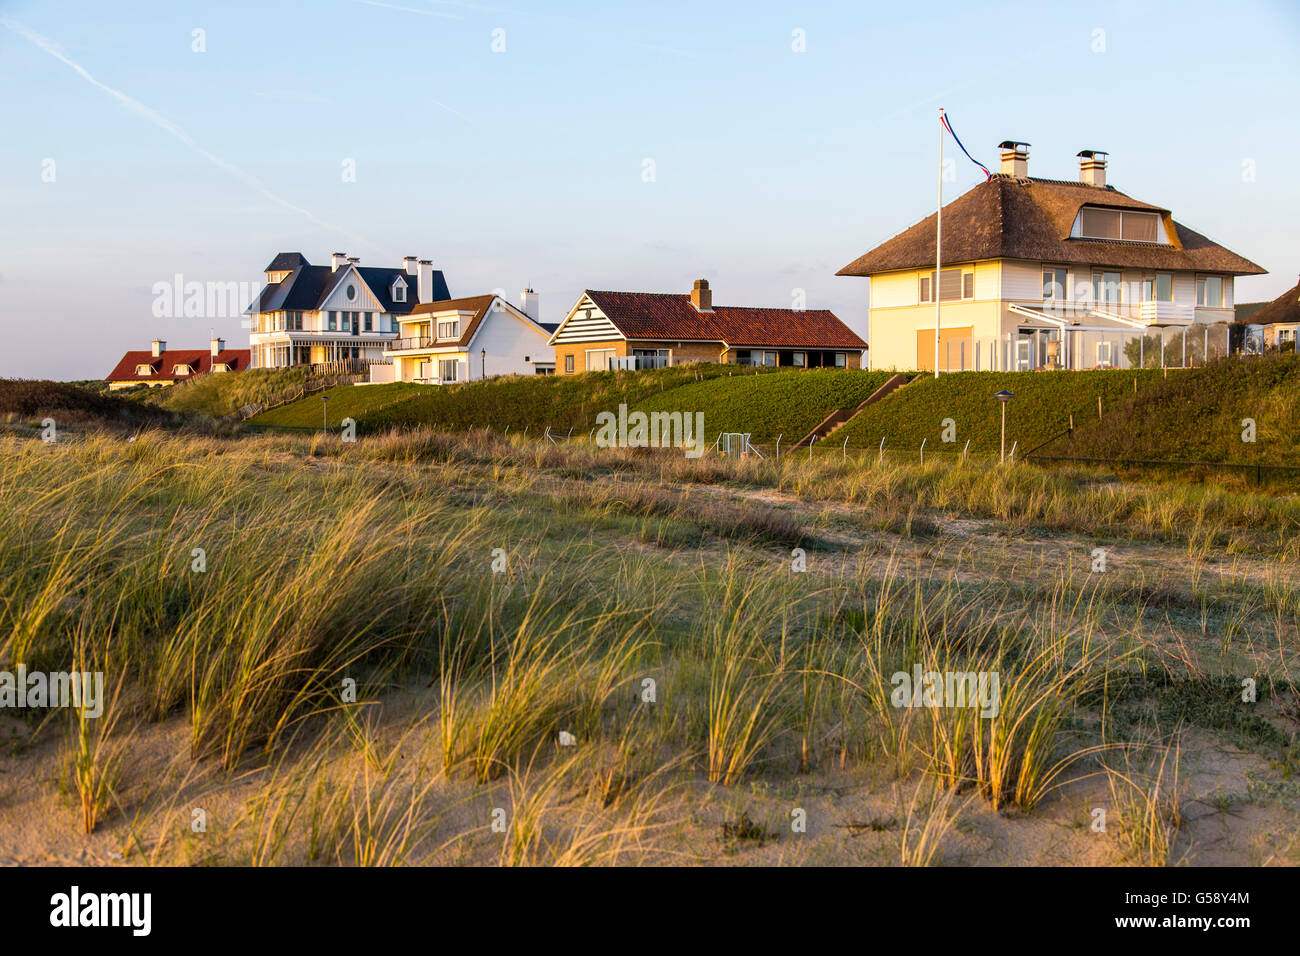 Ciudad costera del Mar del Norte Noordwijk, Países Bajos, Foto de stock